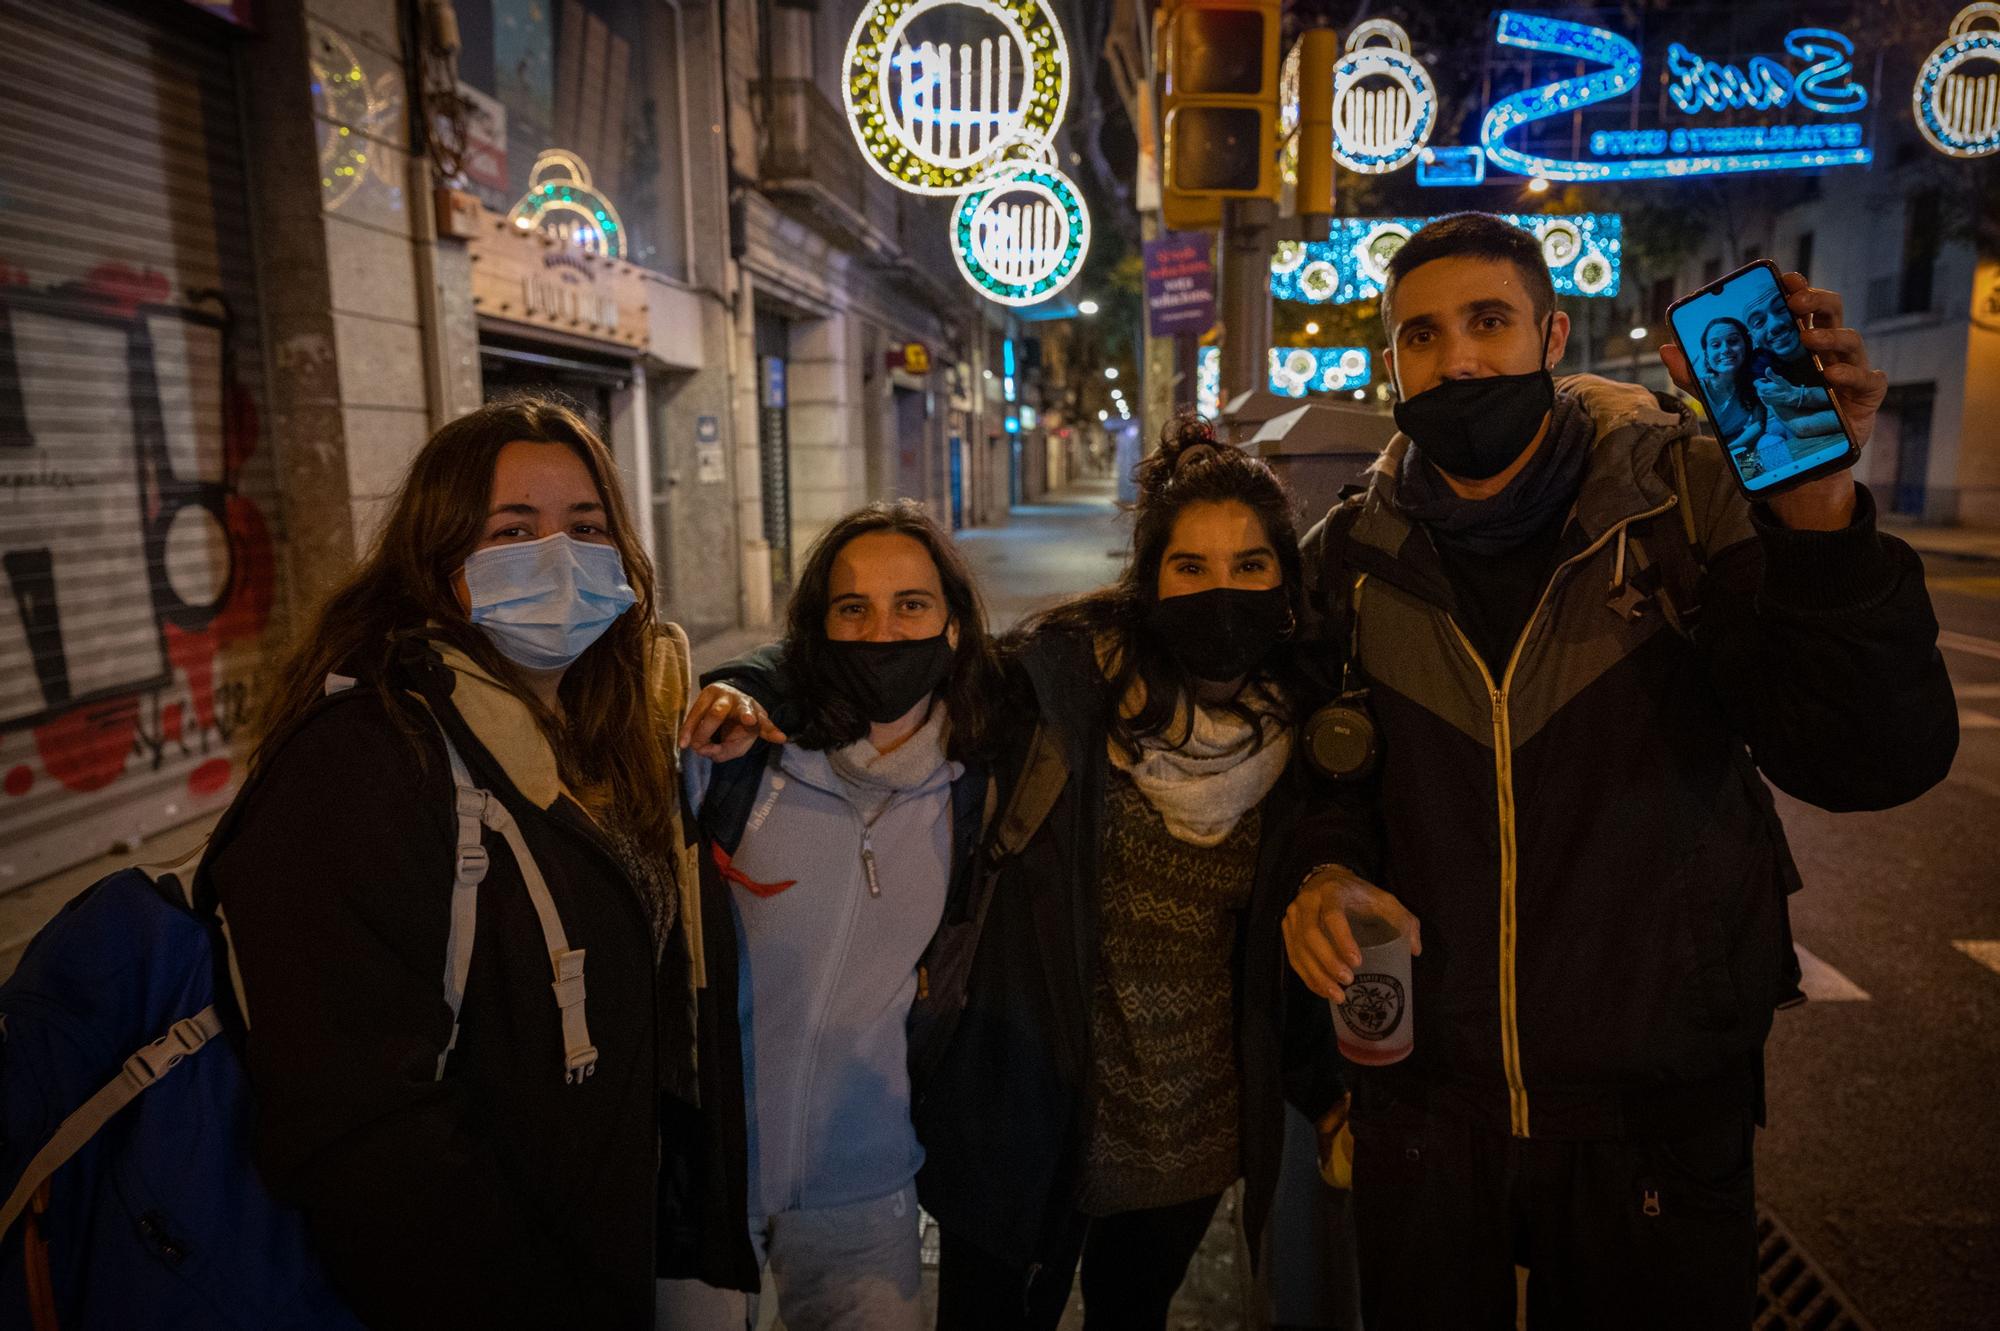 Jóvenes celebran la nochevieja realziando una videollamada con unos amigos en Grecia.